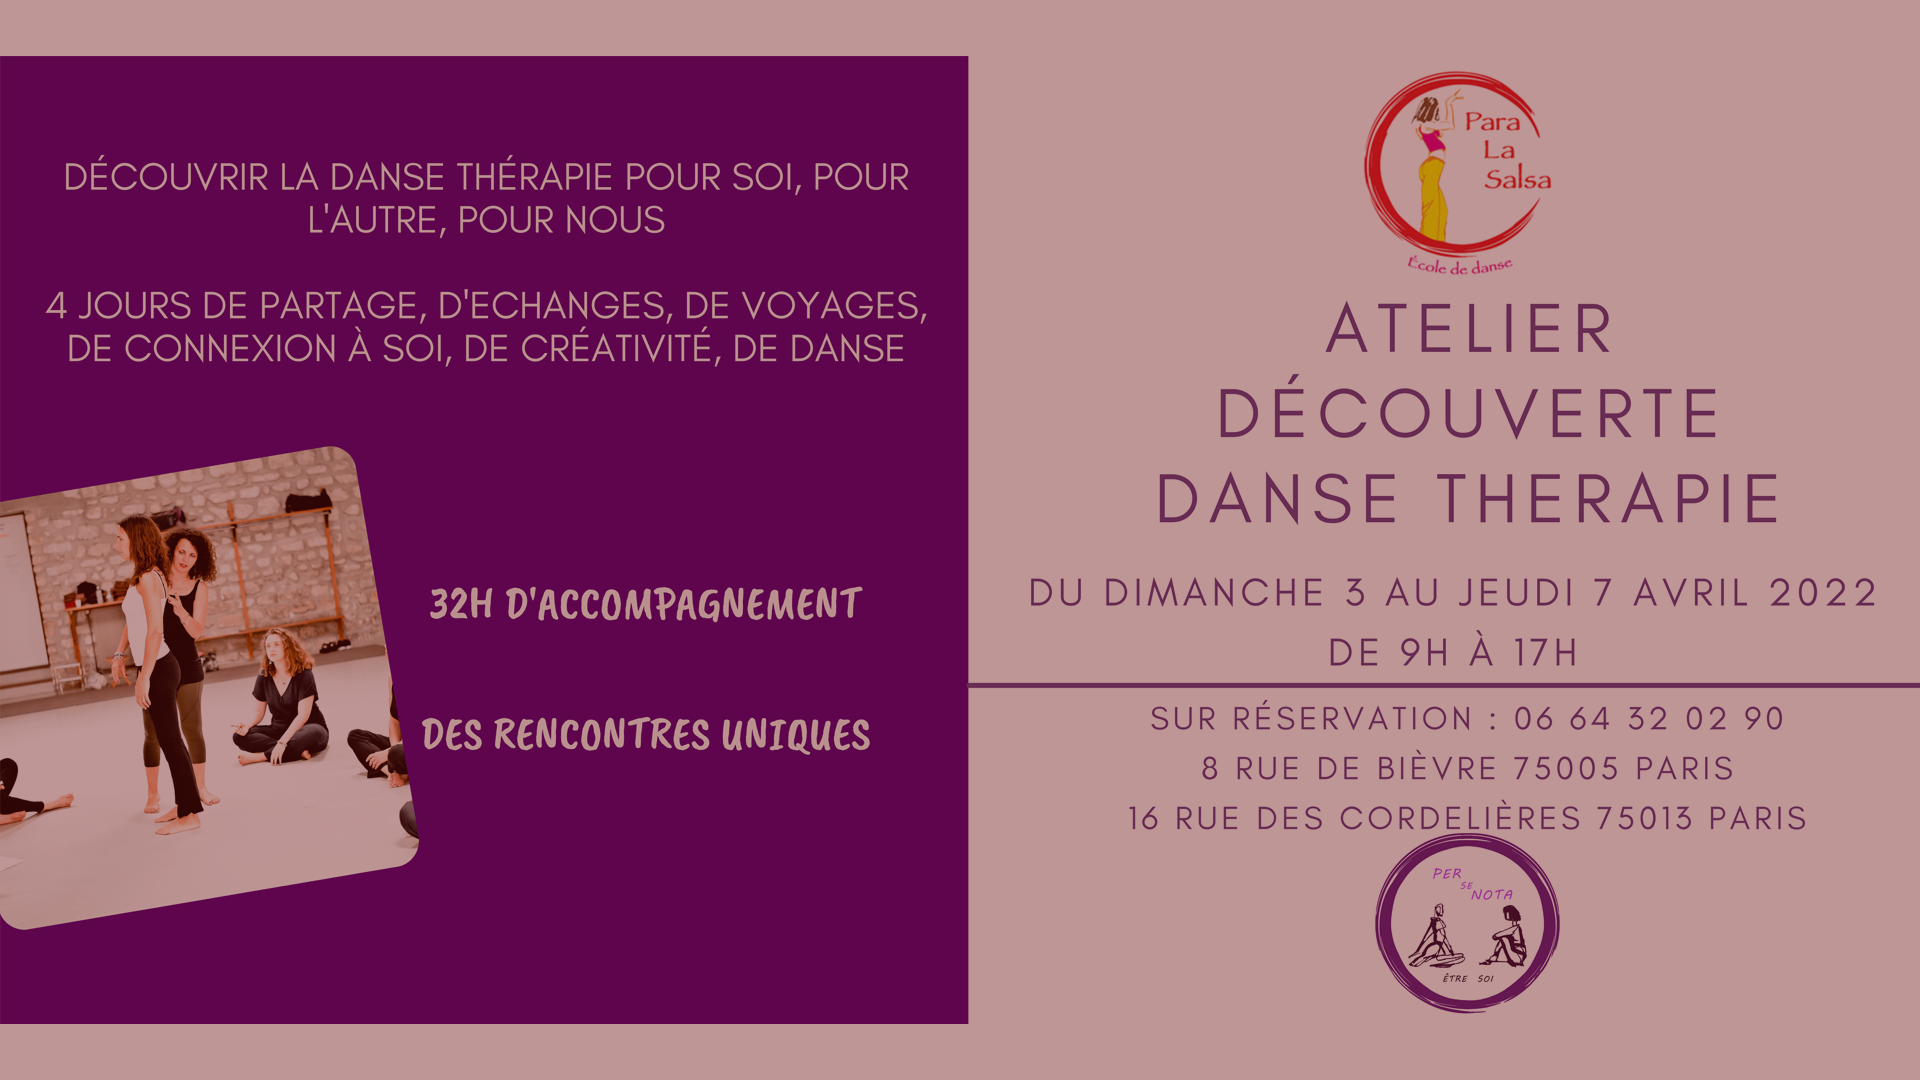 Atelier Découverte en danse thérapie : Rendez-vous l’an prochain !